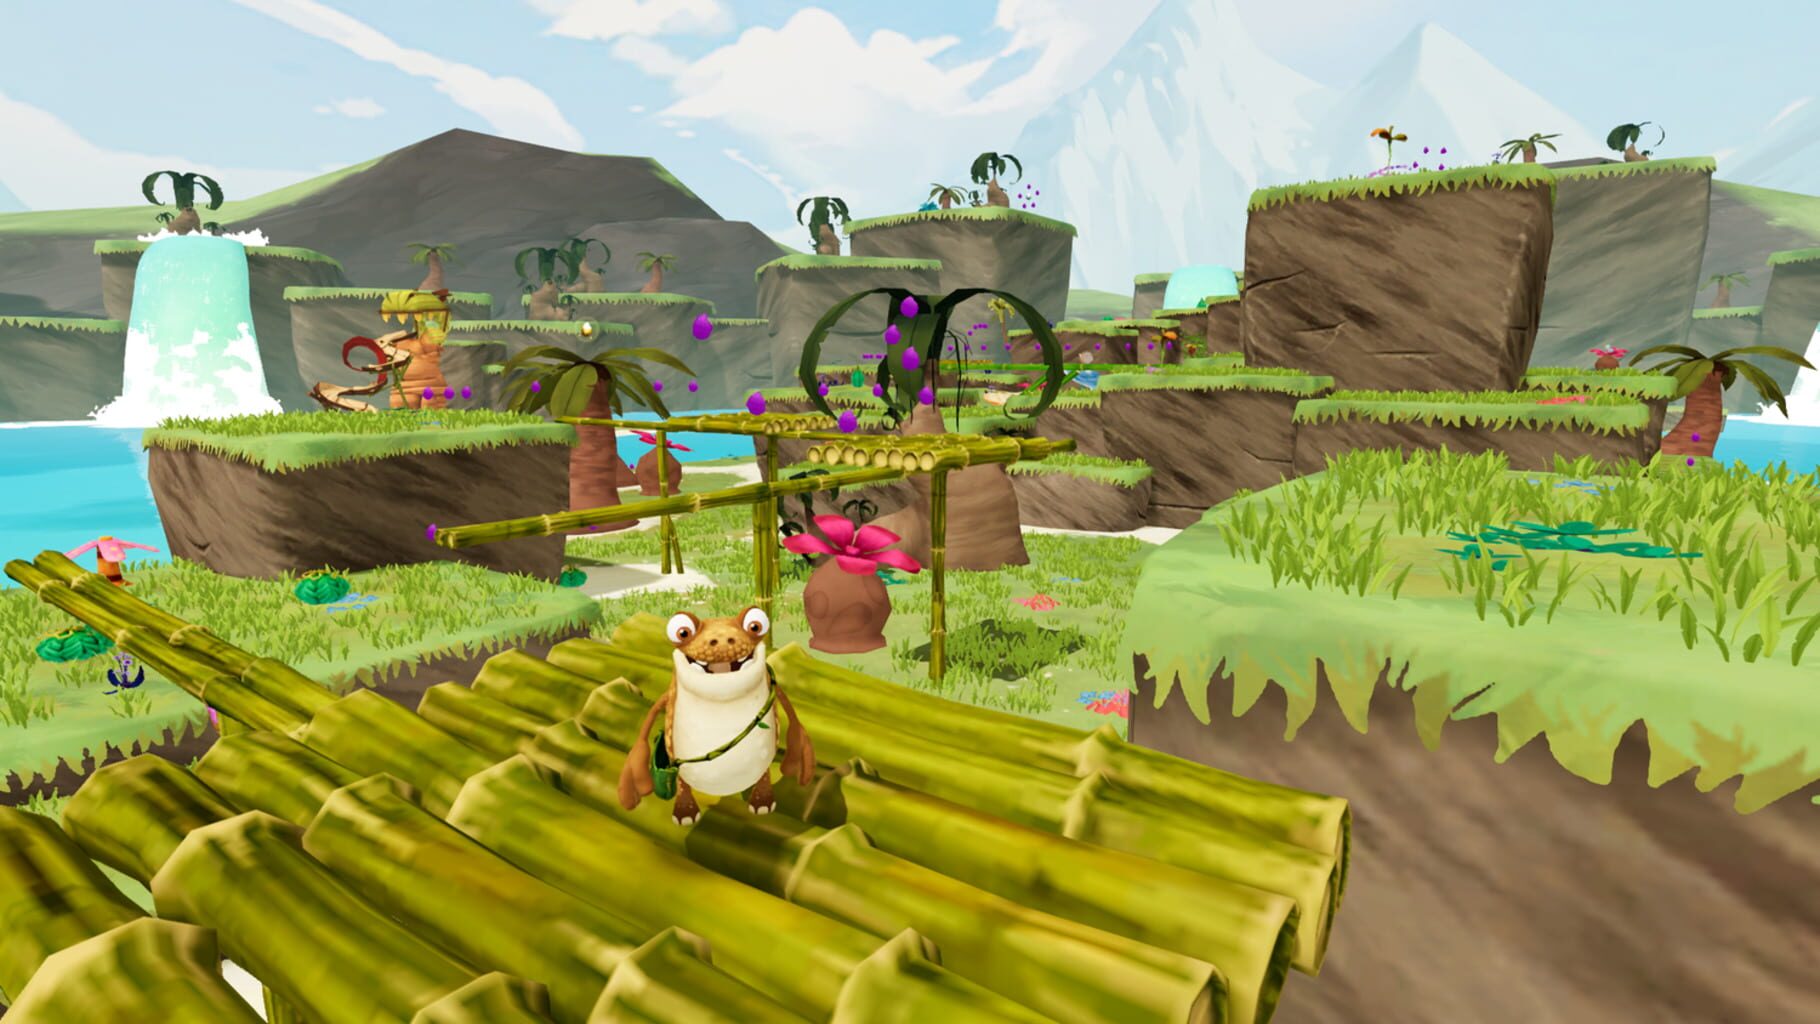 Gigantosaurus: The Game screenshots